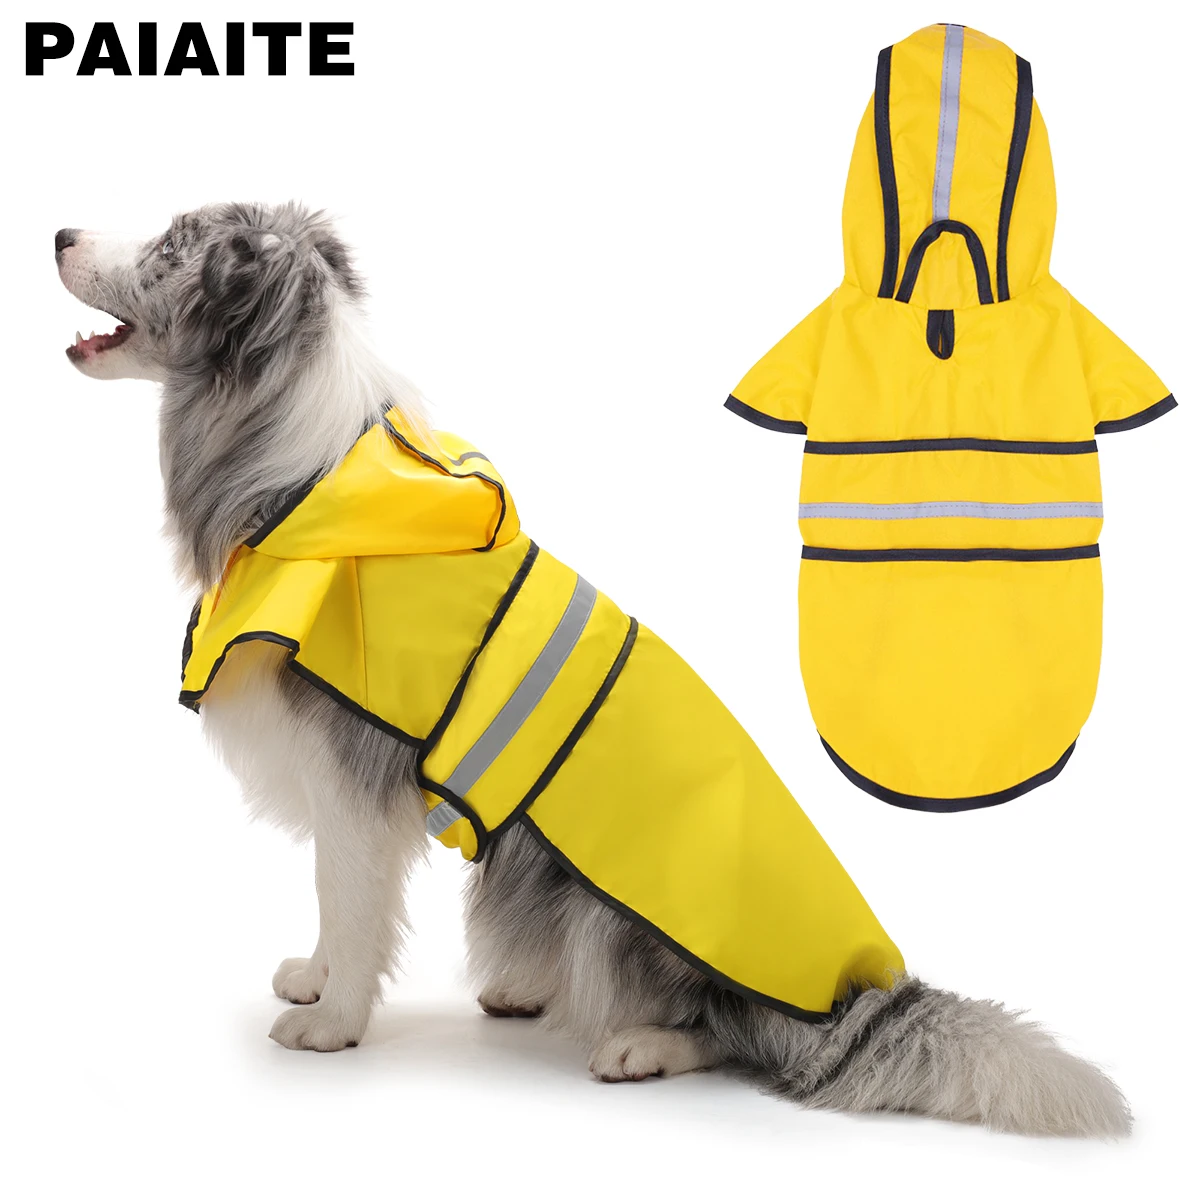 Impermeável reflexivo impermeável ajustável para cão, Poncho com capuz, Rain Jacket para cães pequenos, médios e grandes